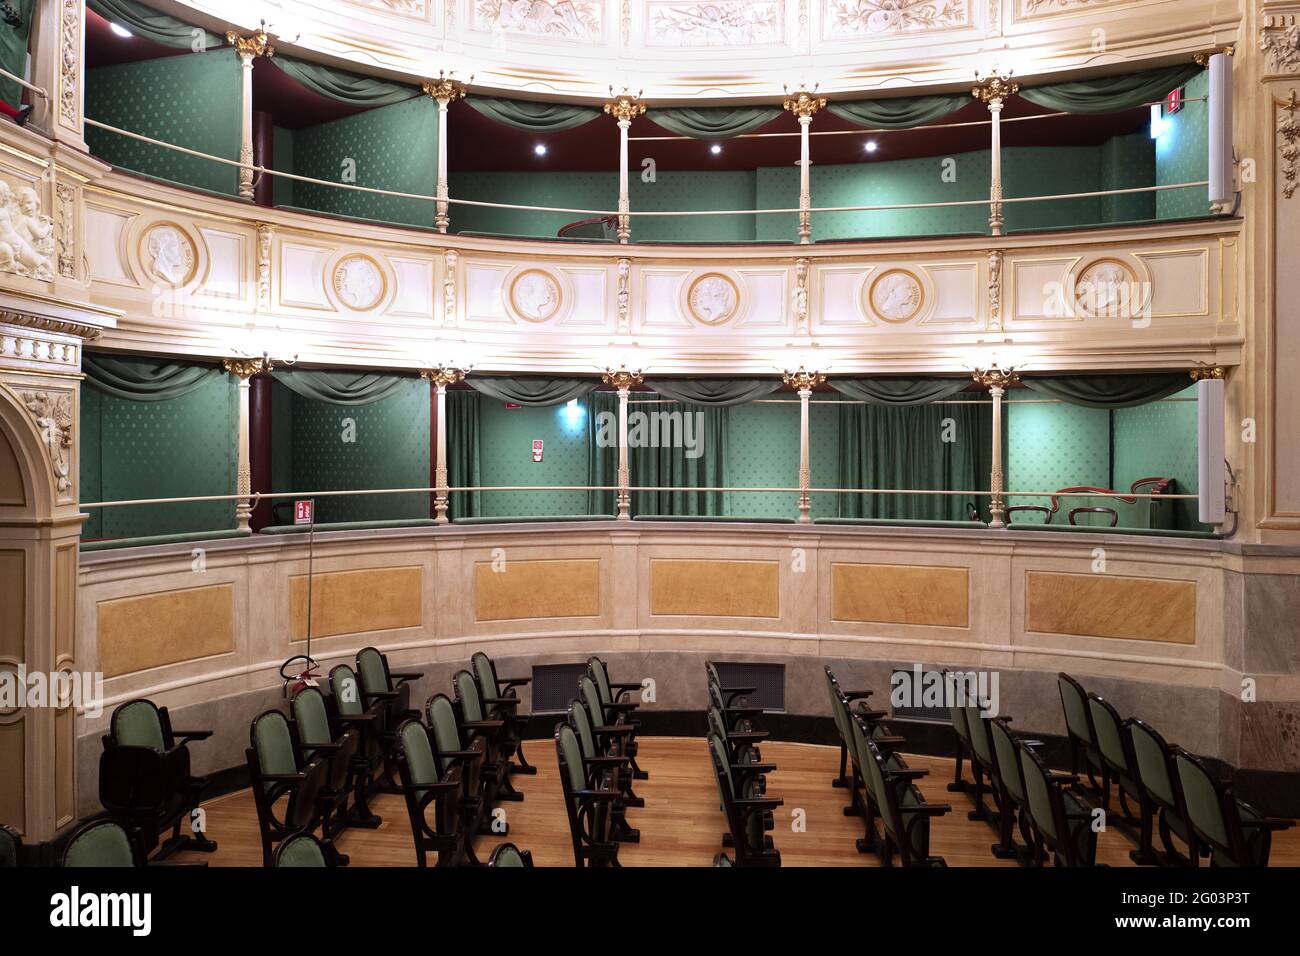 Renovierte Innenräume des historischen Theaters Gerolamo, das 1868 in Mailand gegründet wurde. Stockfoto